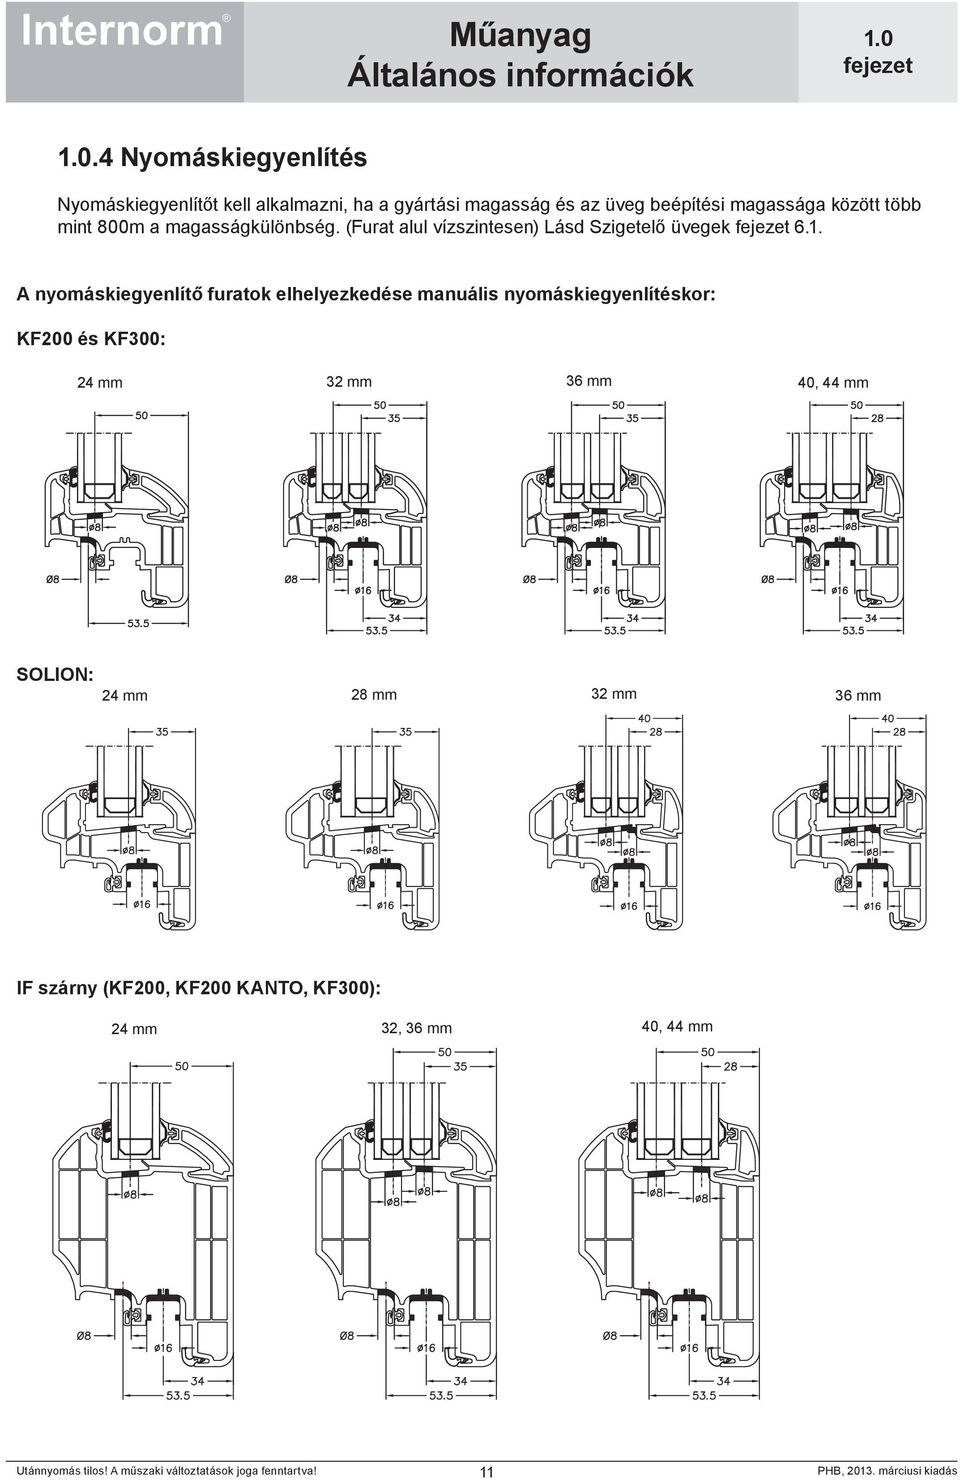 A nyomáskiegyenlítő furatok elhelyezkedése manuális nyomáskiegyenlítéskor: KF200 és KF300: 24 mm 32 mm 36